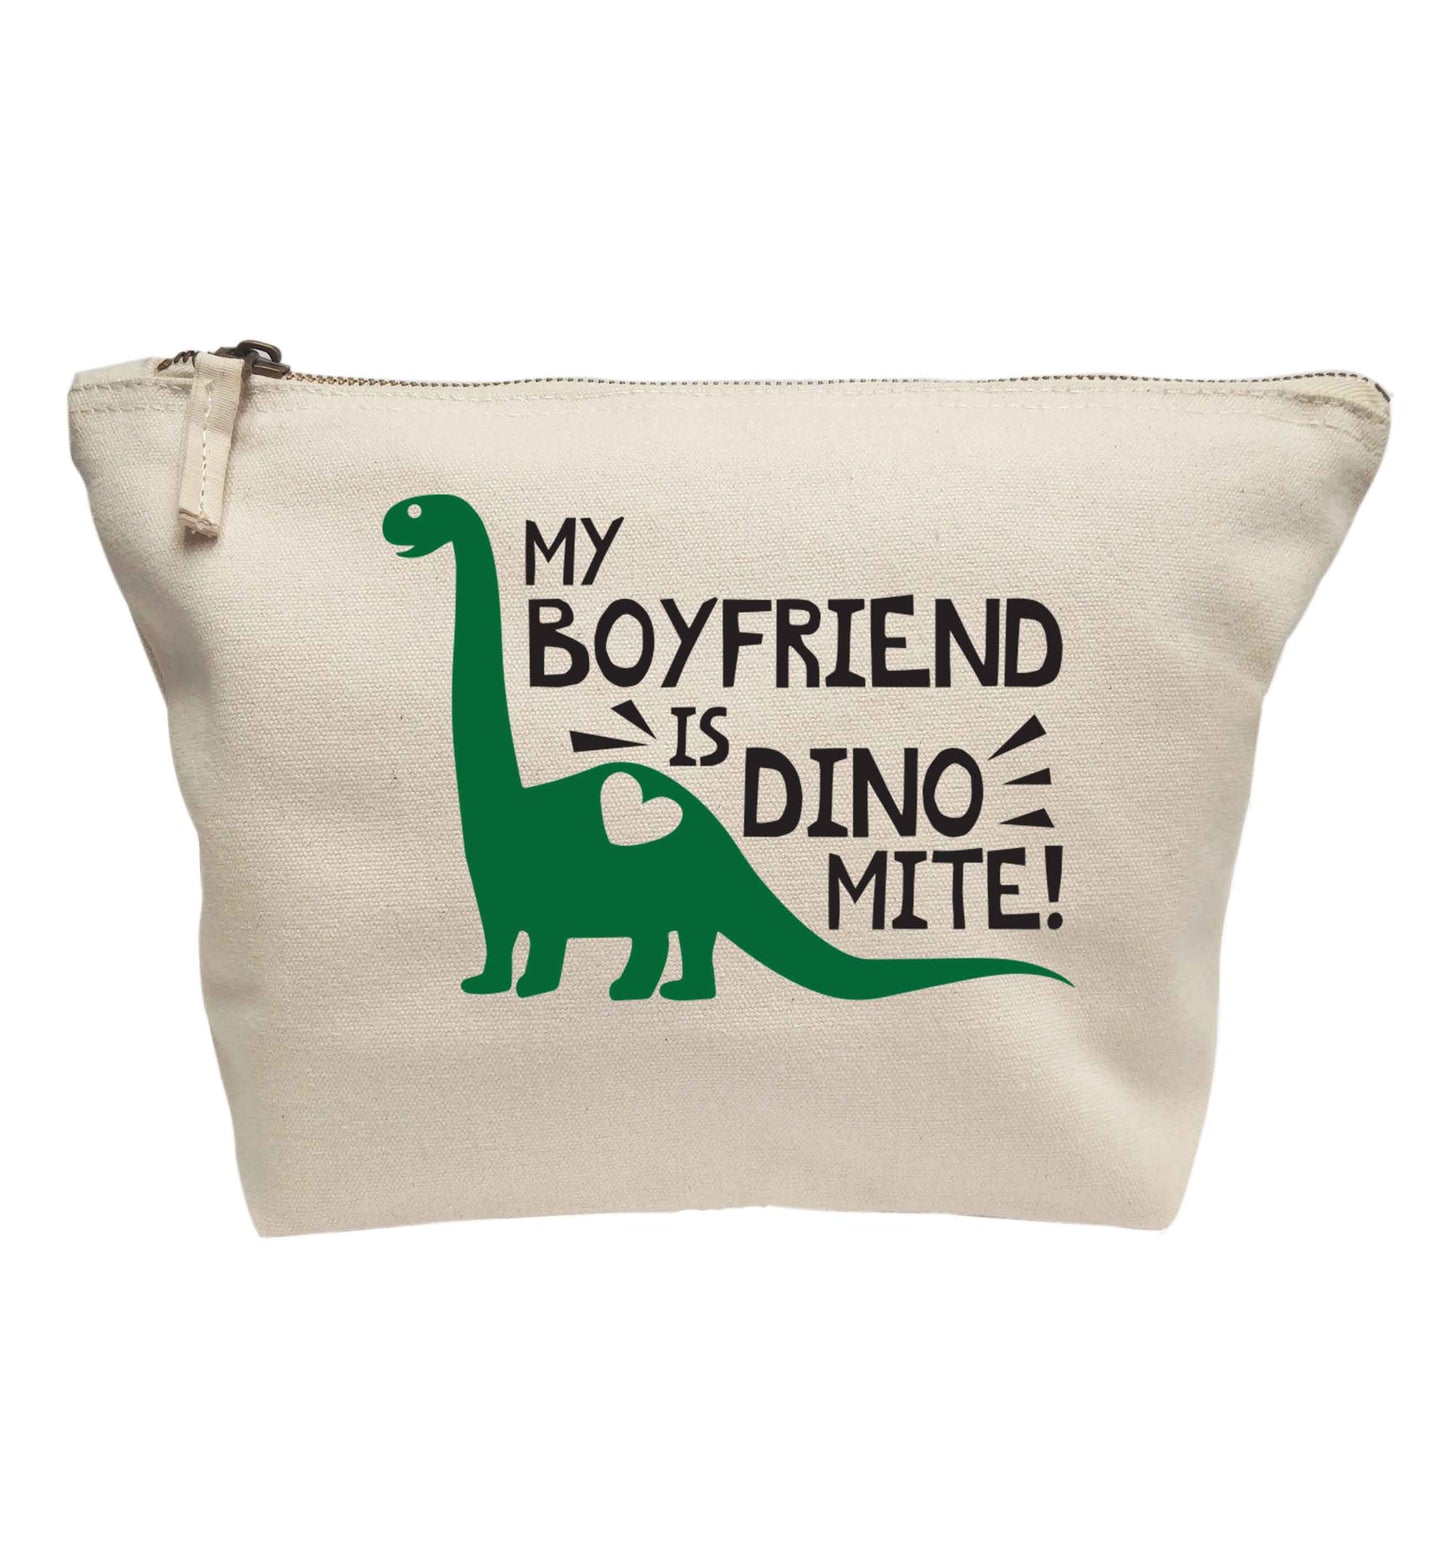 My boyfriend is dinomite! | makeup / wash bag